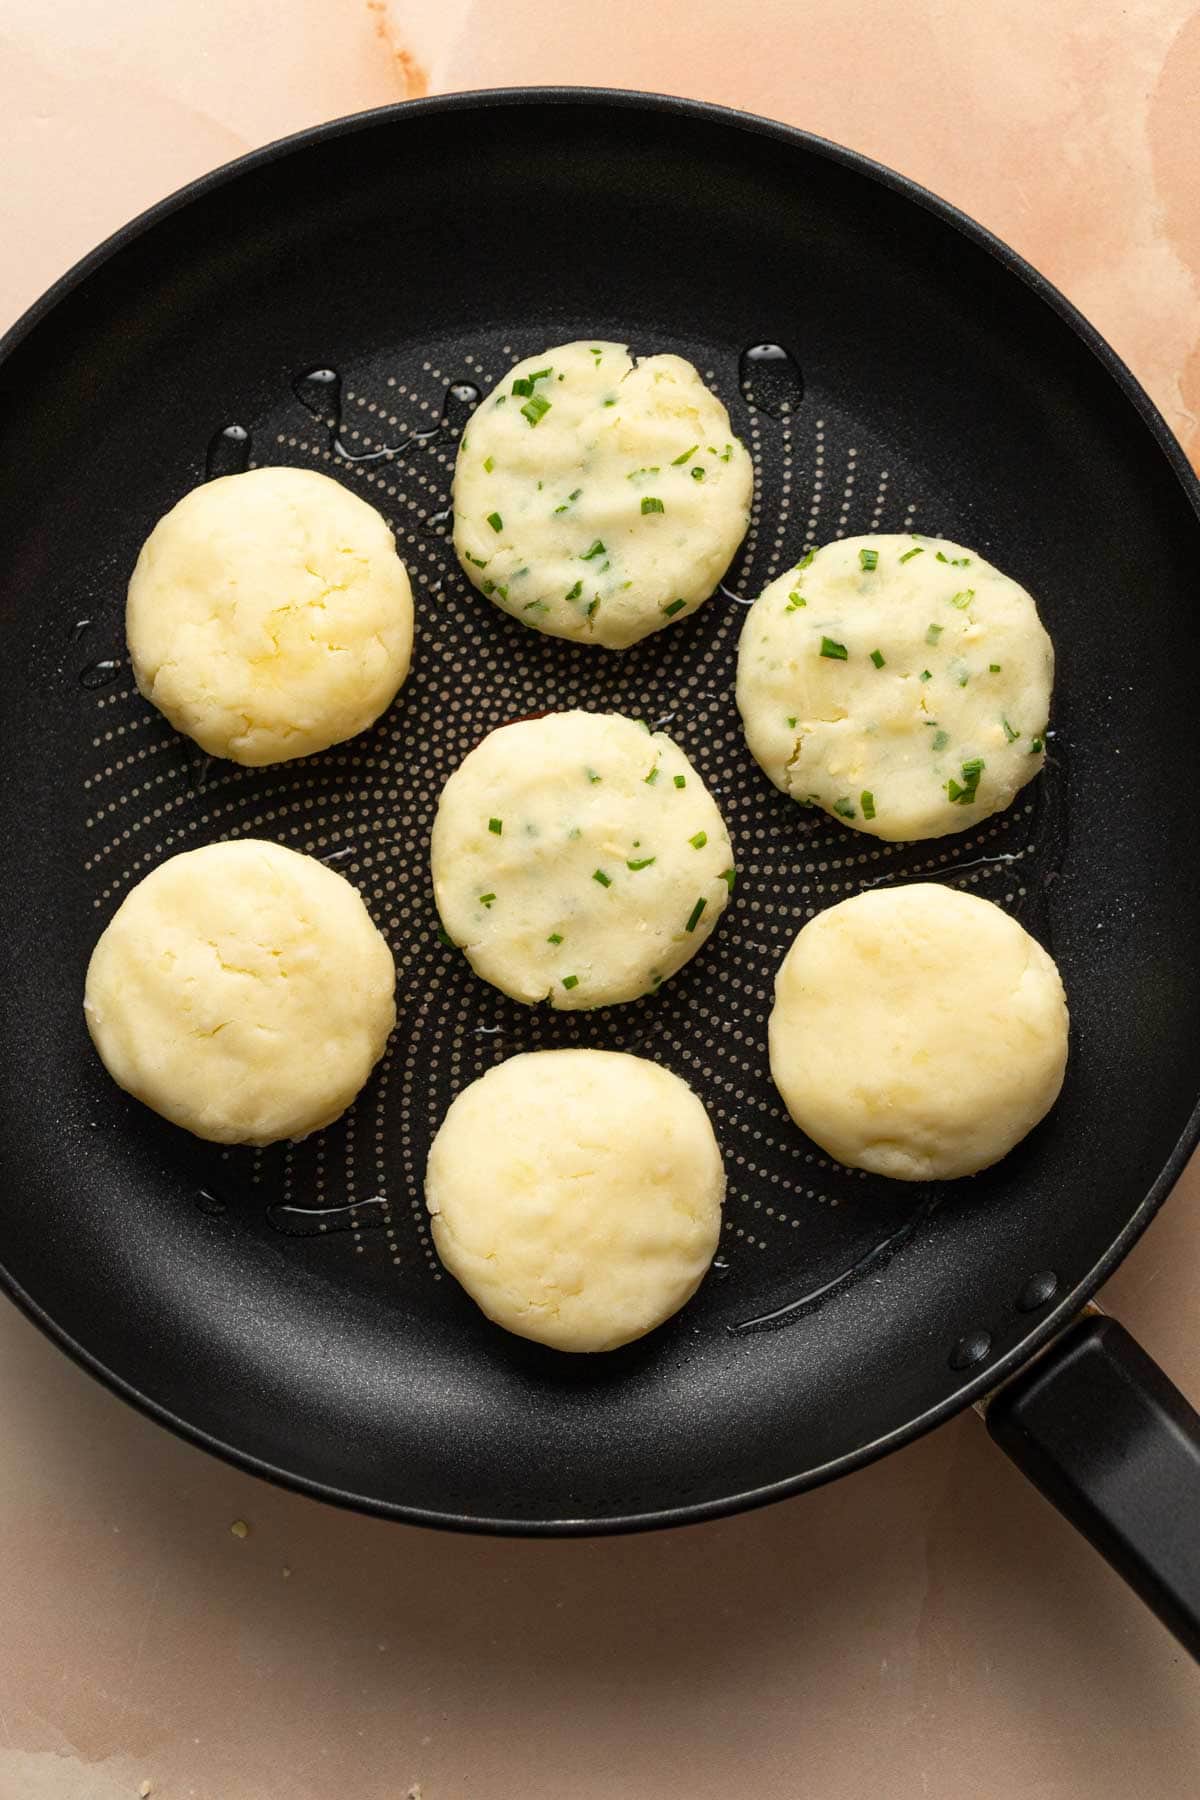 Seven potato mochi in a frying pan.